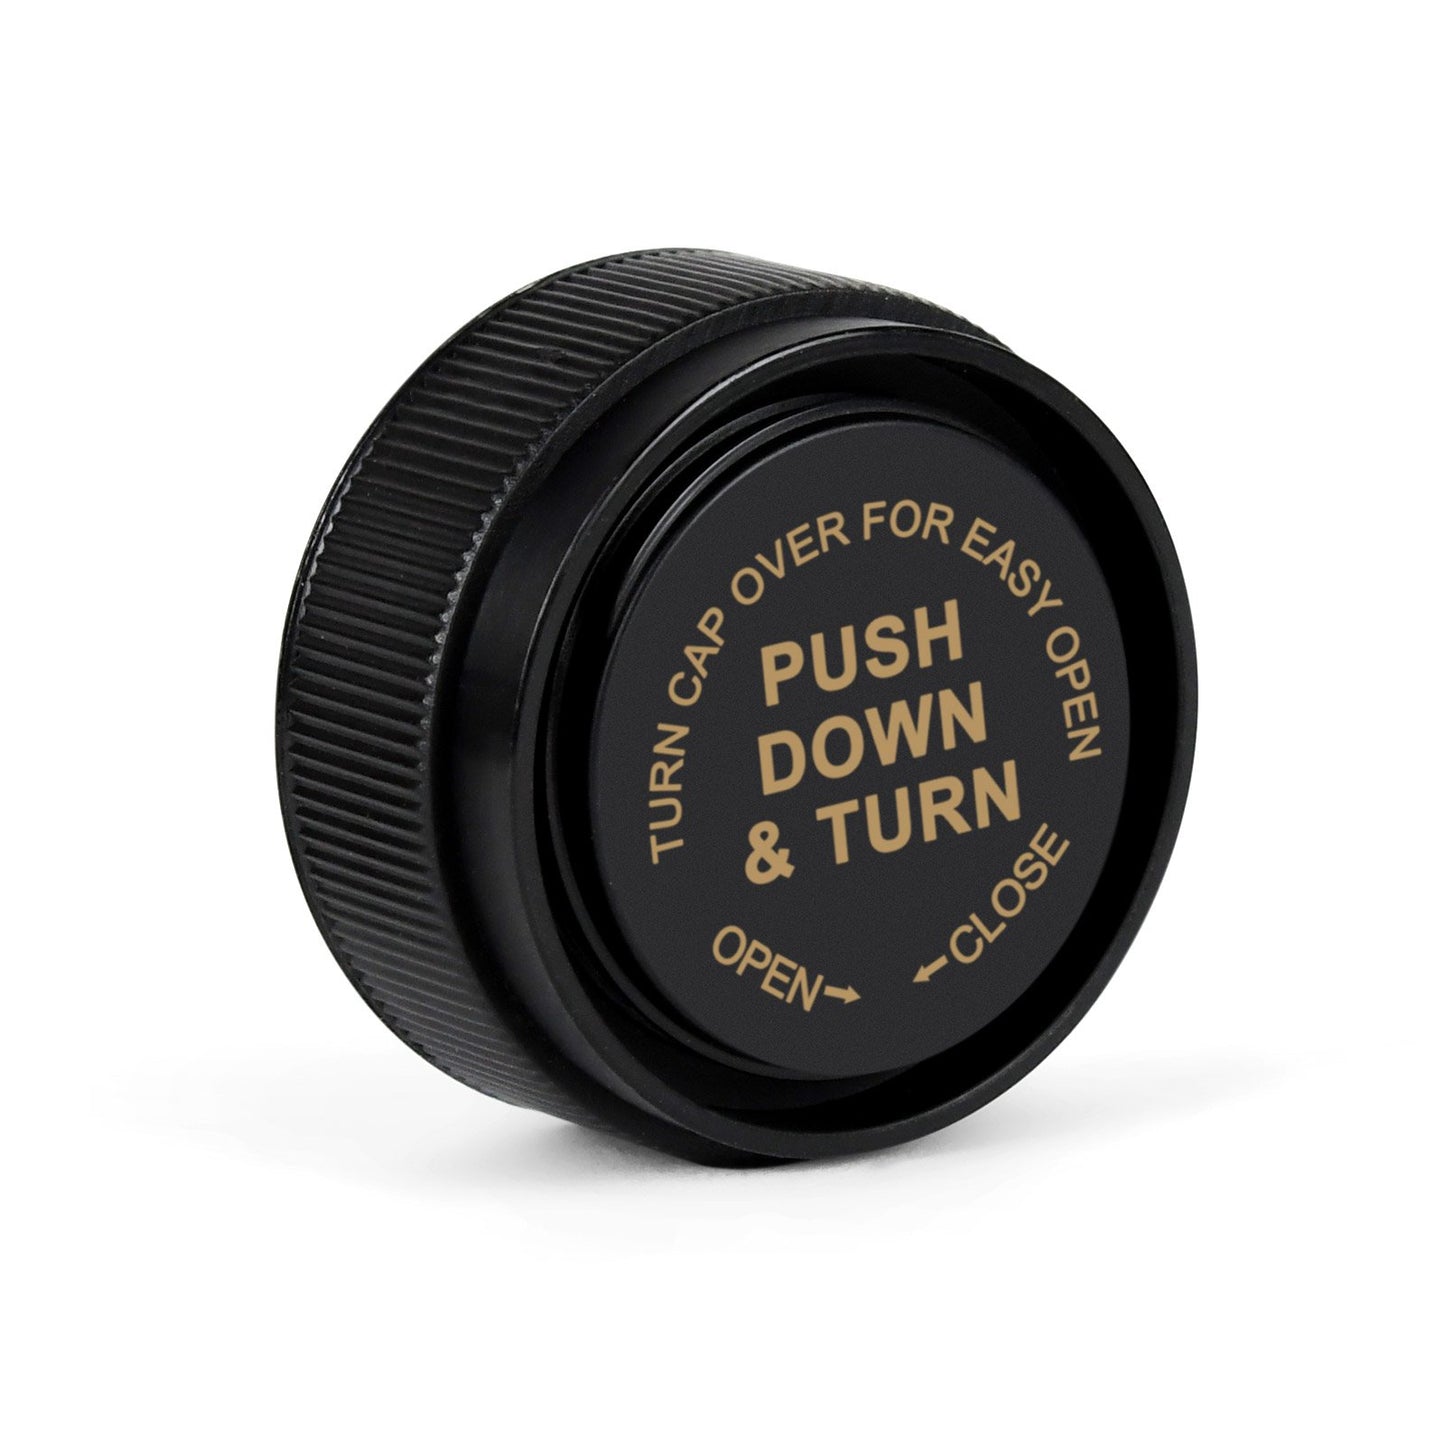 30 Dram Push Down & Turn Cap Opaque Black - 190 COUNT